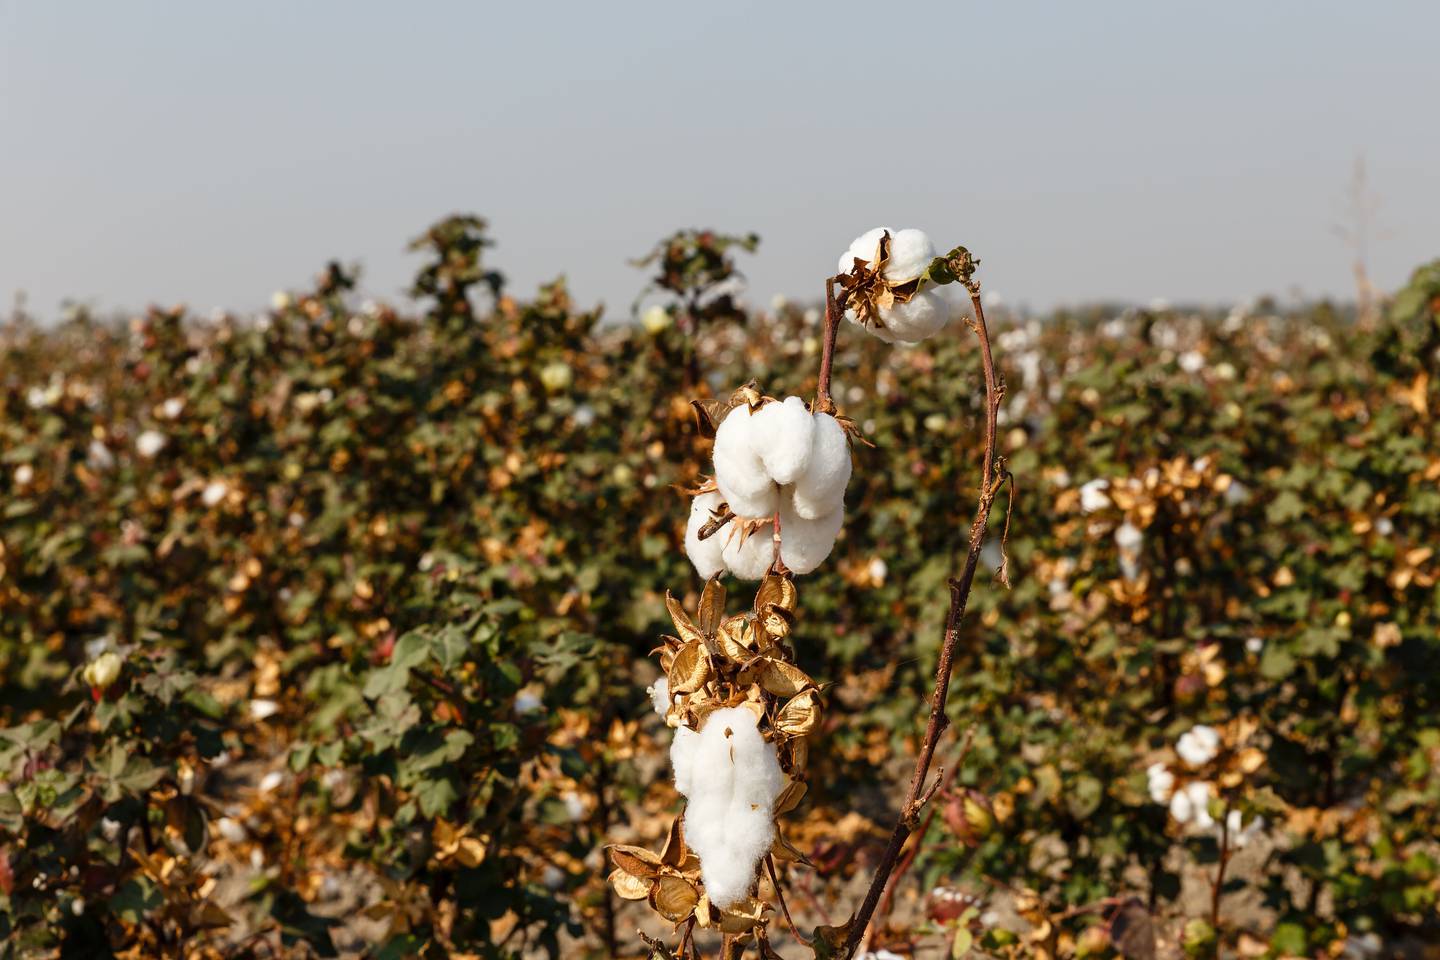 Cotton fields in Uzbekistan. Shutterstock.